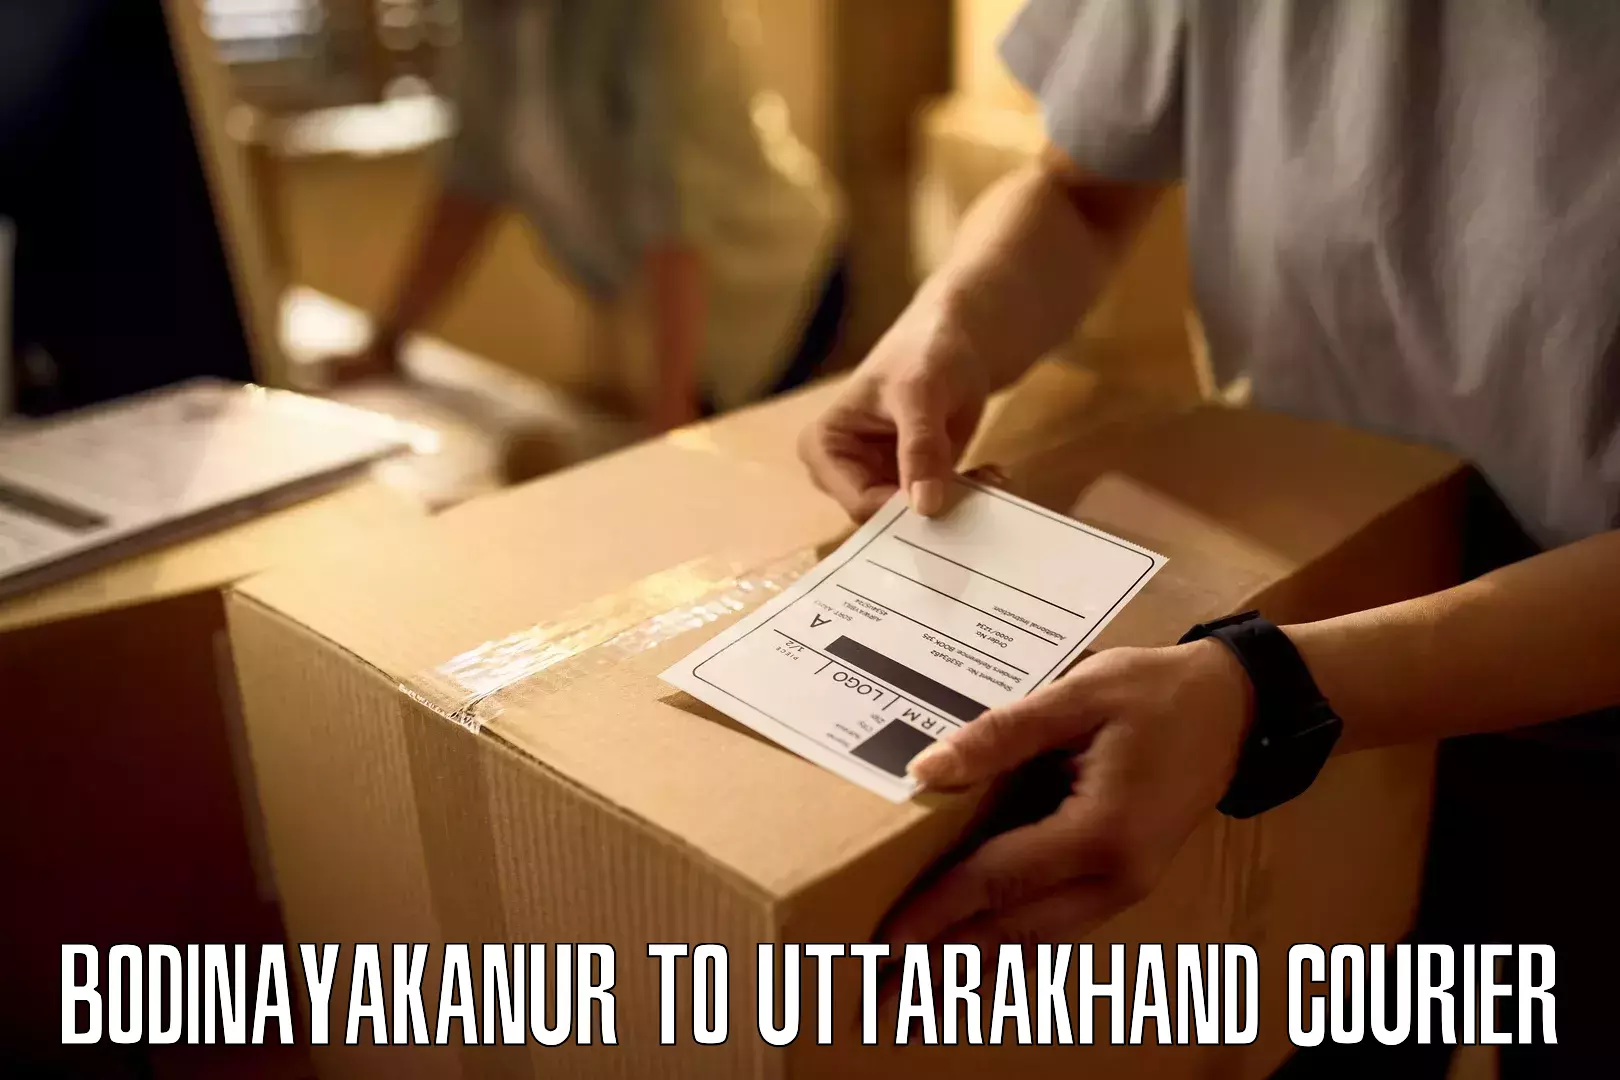 Efficient cargo handling Bodinayakanur to Bageshwar